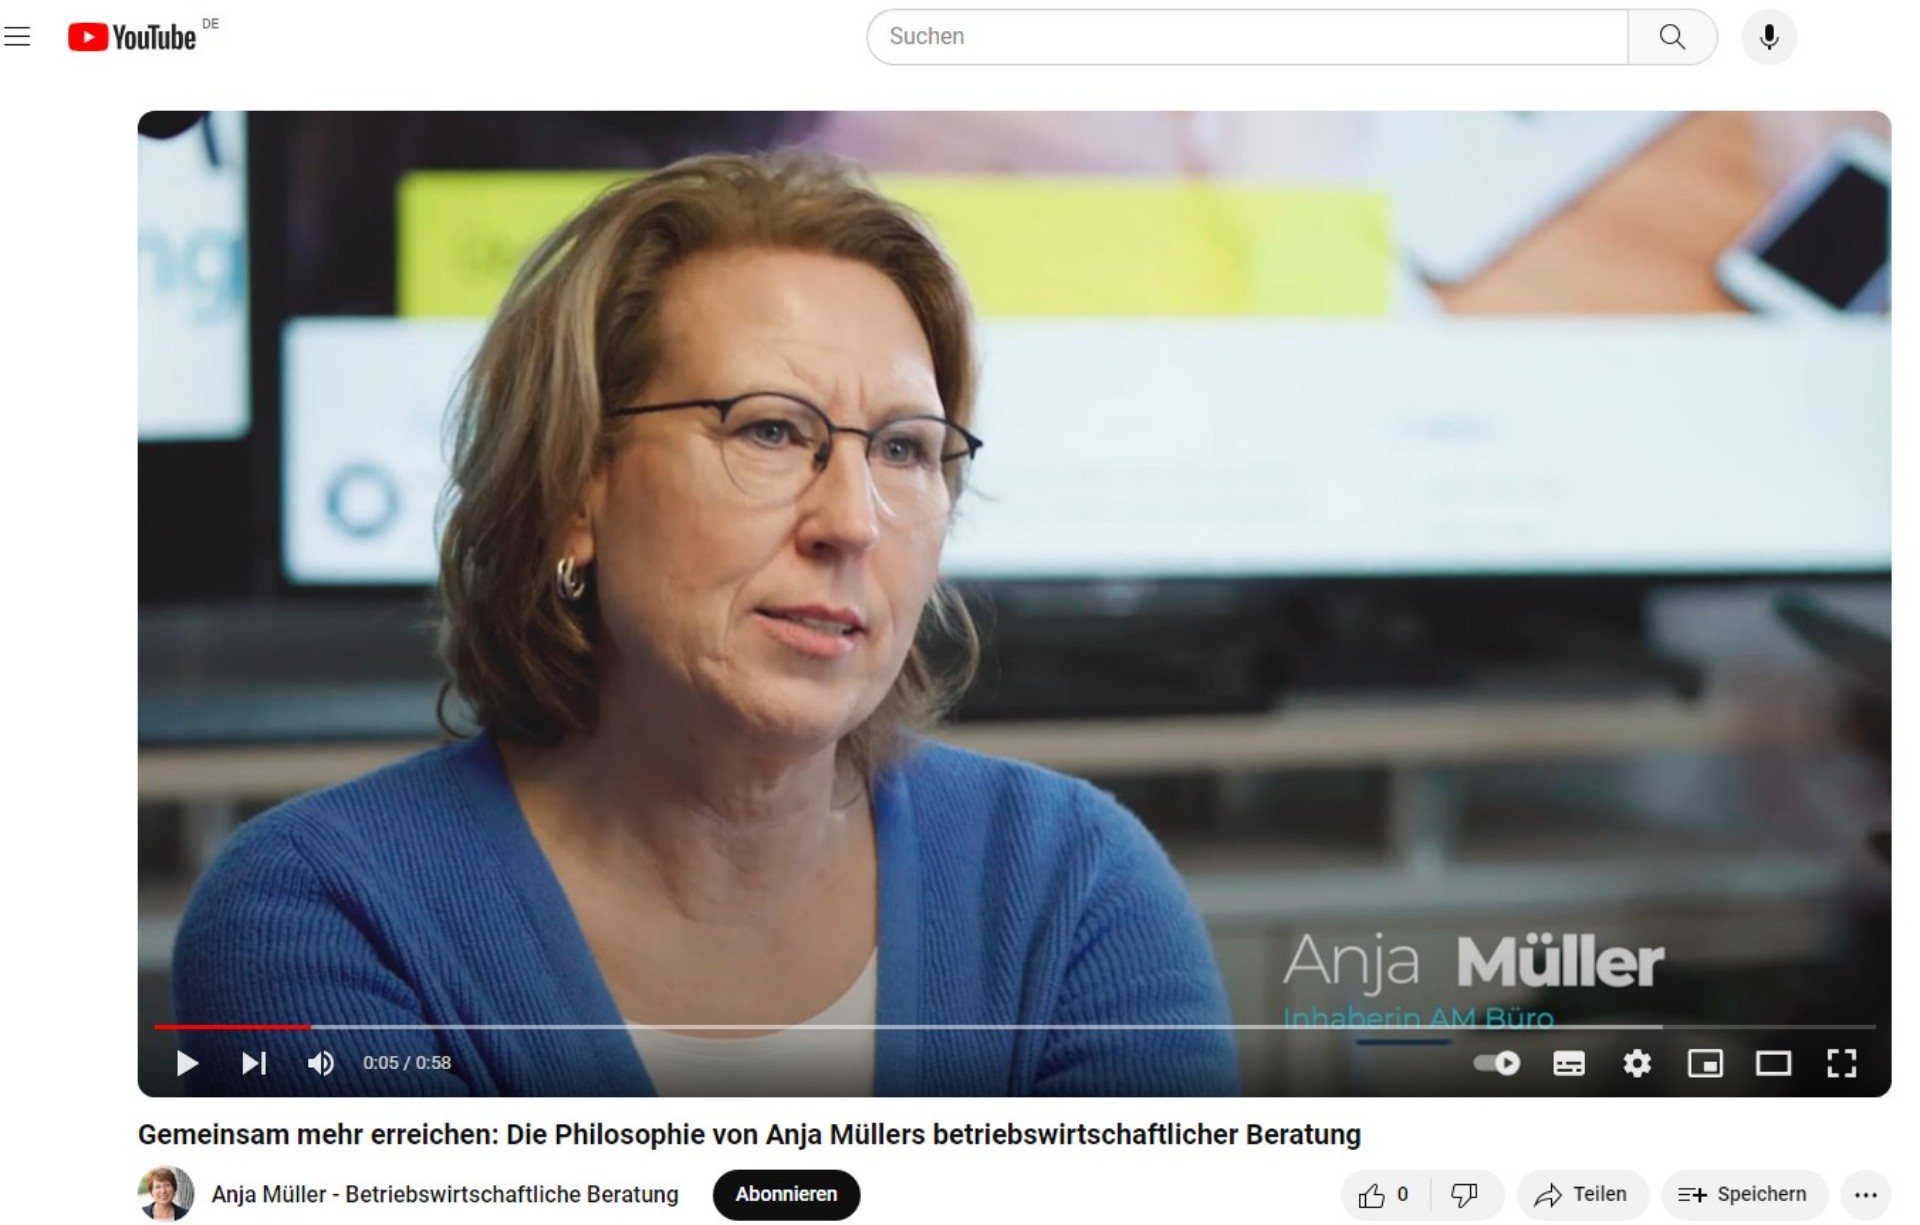 Anja Müller Betriebswirtschaftliche Beratung jetzt auch auf YouTube